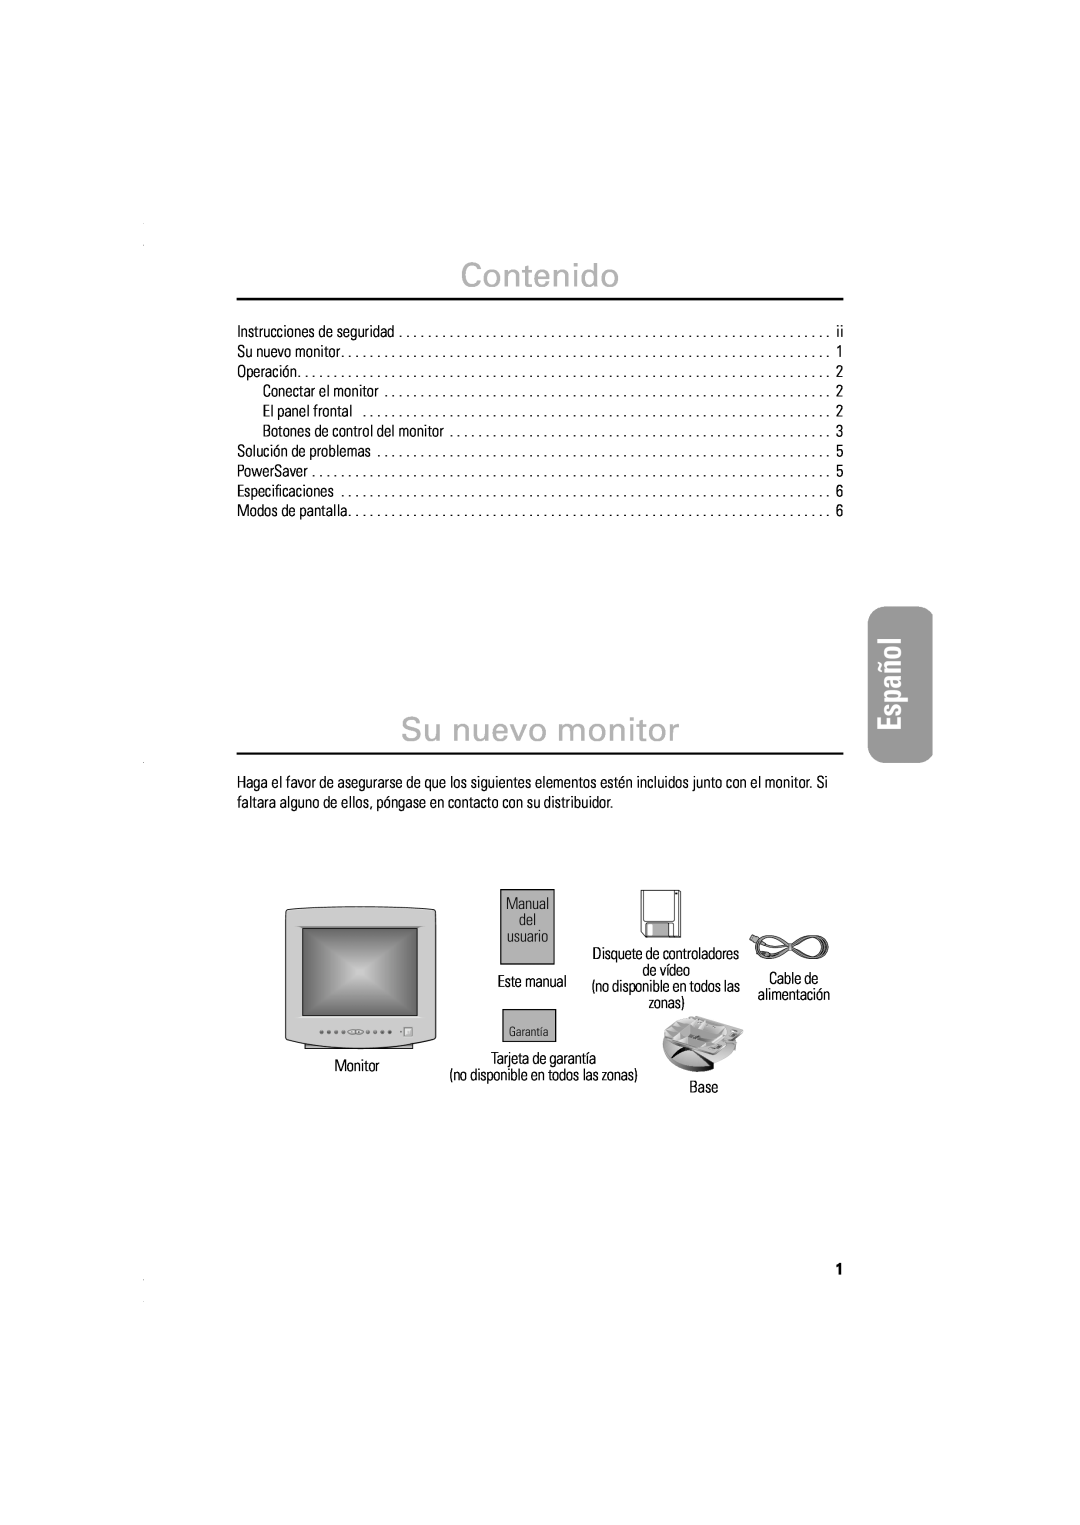 Samsung DP14LS, DP15LS Contenido, Su nuevo monitor, English, Español, Manual del usuario, Este manual, Monitor, Base 